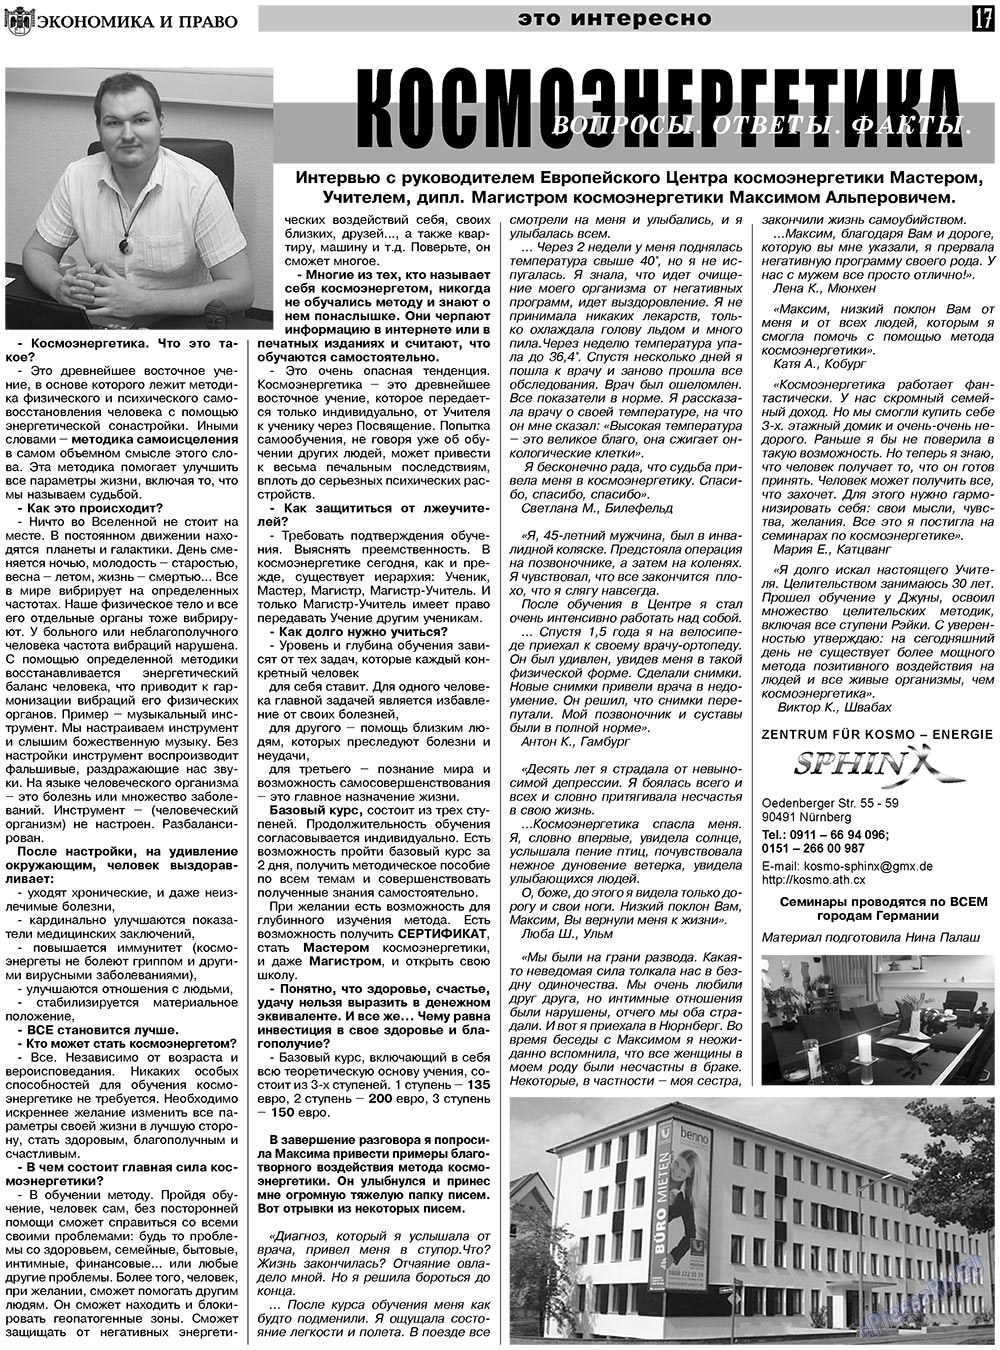 Экономика и право, газета. 2010 №11 стр.17